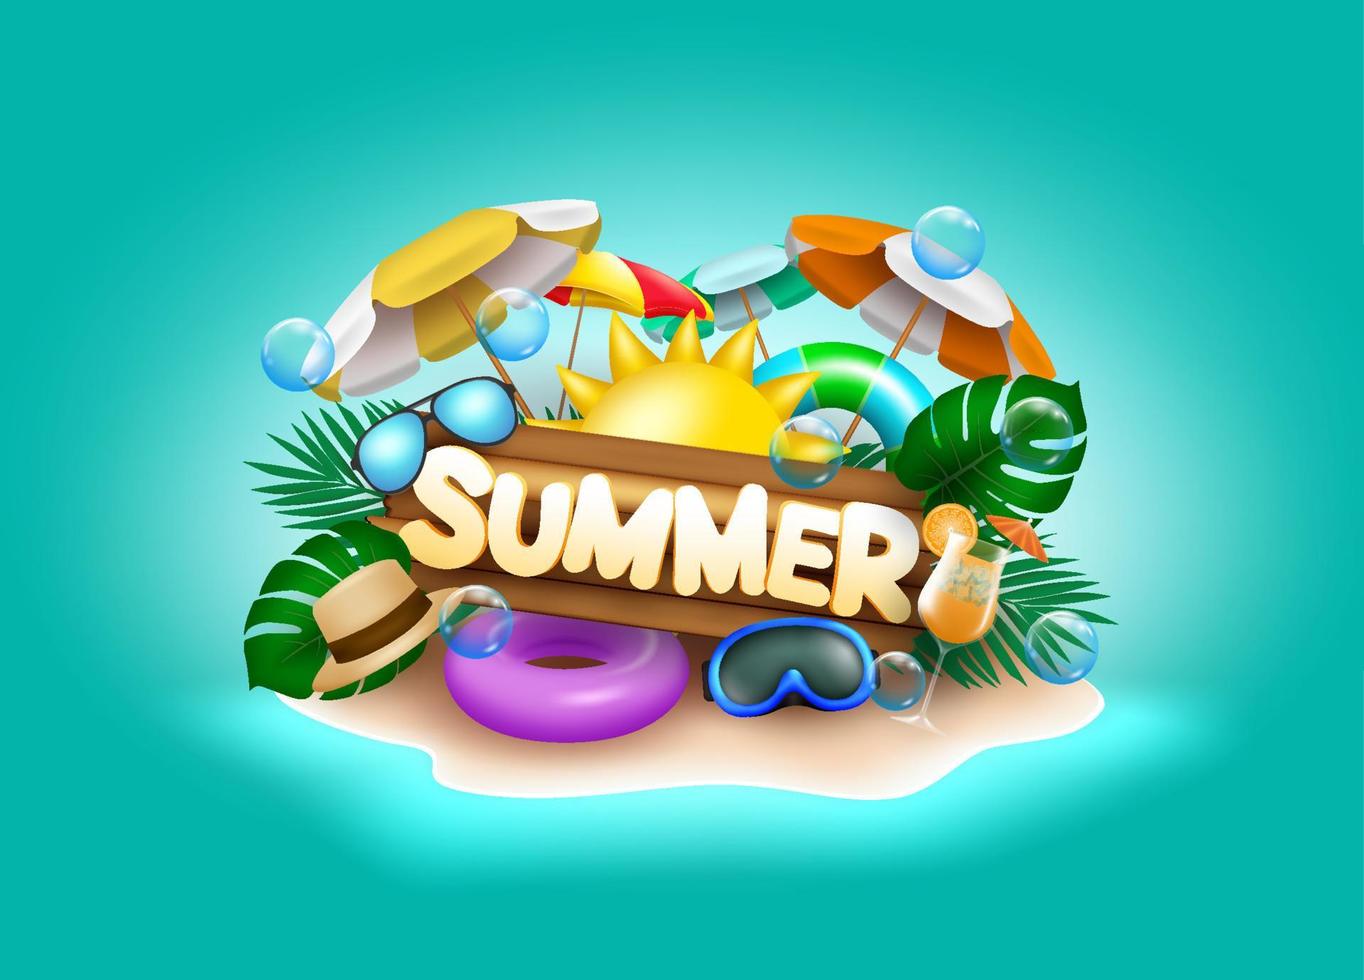 zomer vector banner ontwerp. zomertekst op eiland met kleurrijk strandelement zoals zon, paraplu, drijver en bril op groene zeeachtergrond.